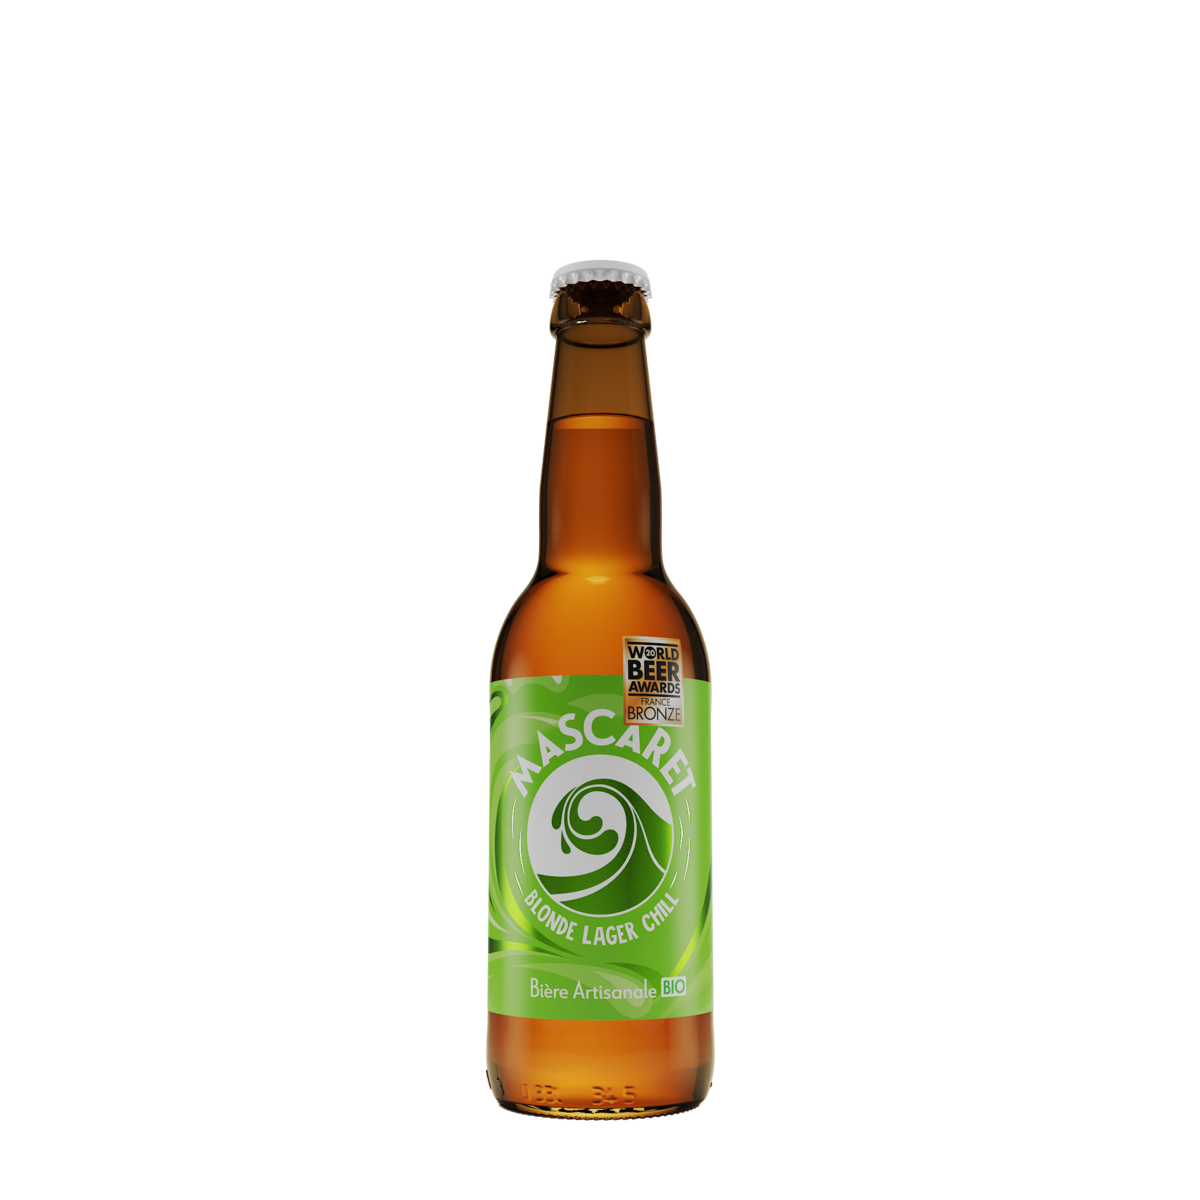 MASCARET Bière blonde bio lager artisanale 4,5% bouteille 33cl